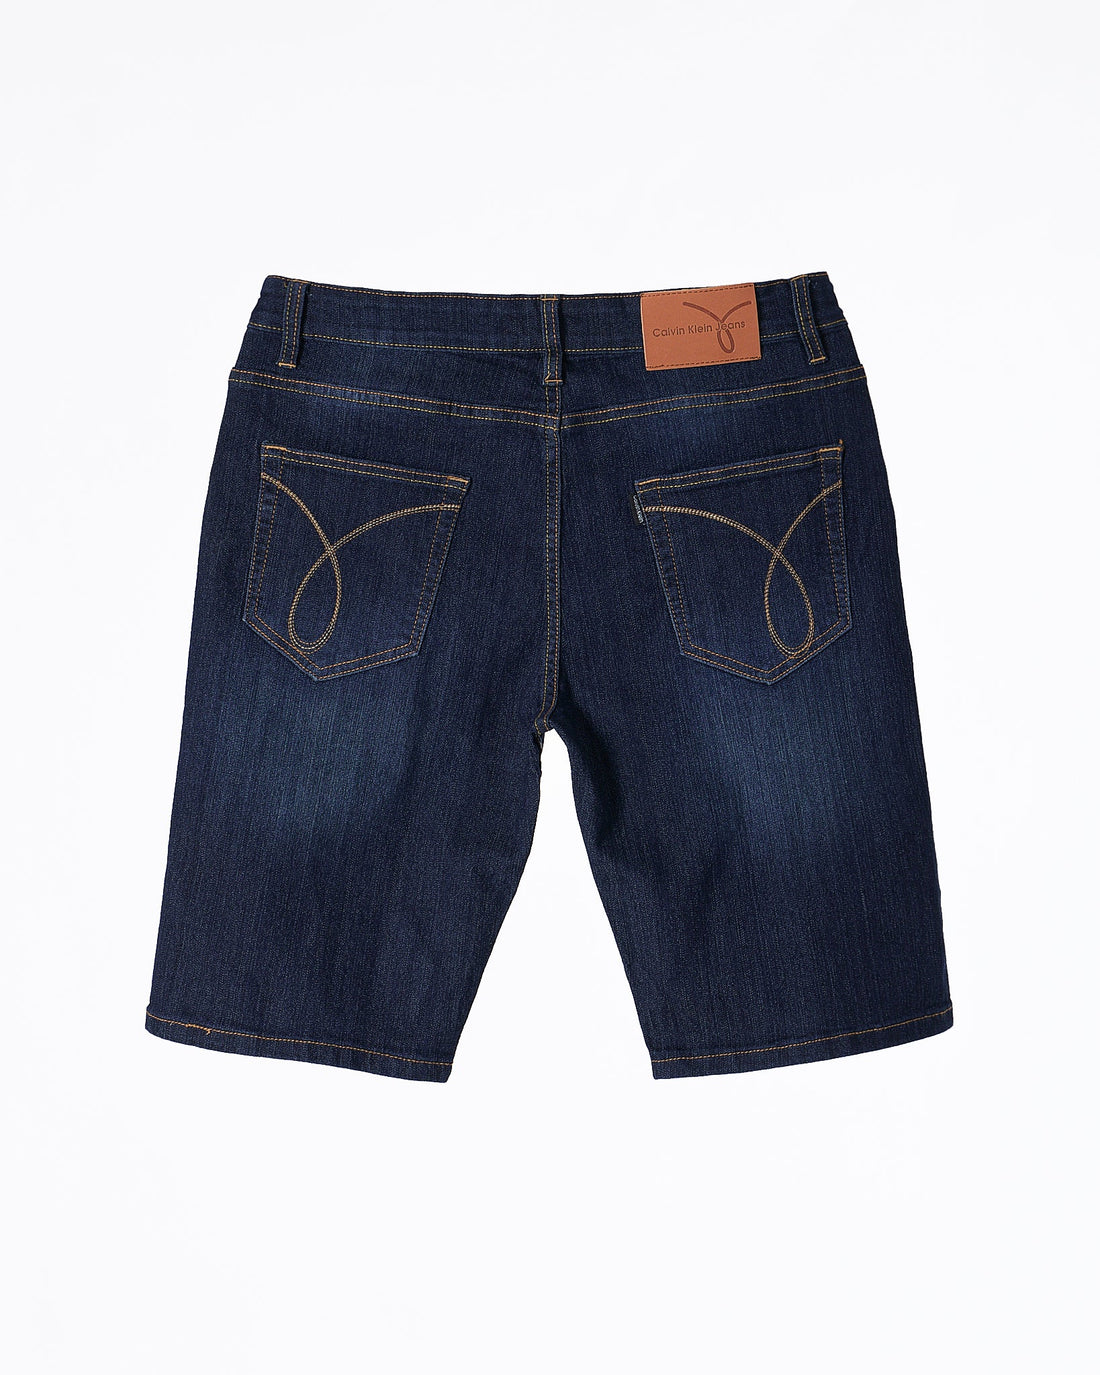 MOI OUTFIT-CK Men Blue Short Jeans 17.90